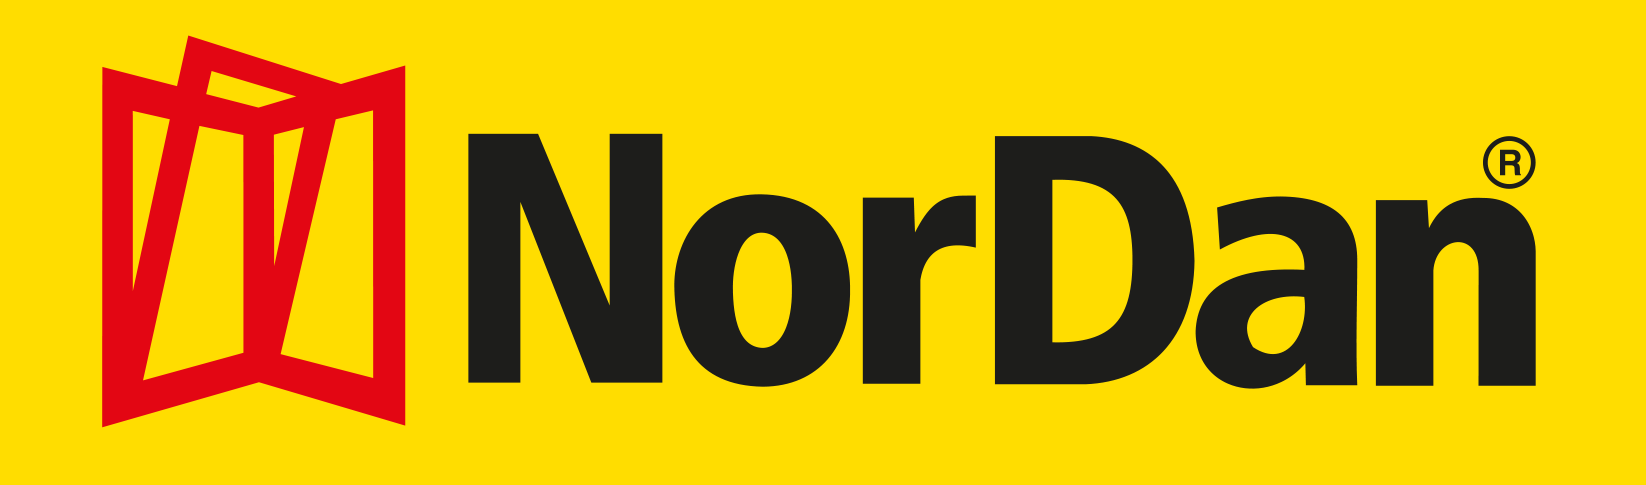 ND_logo_Yellow